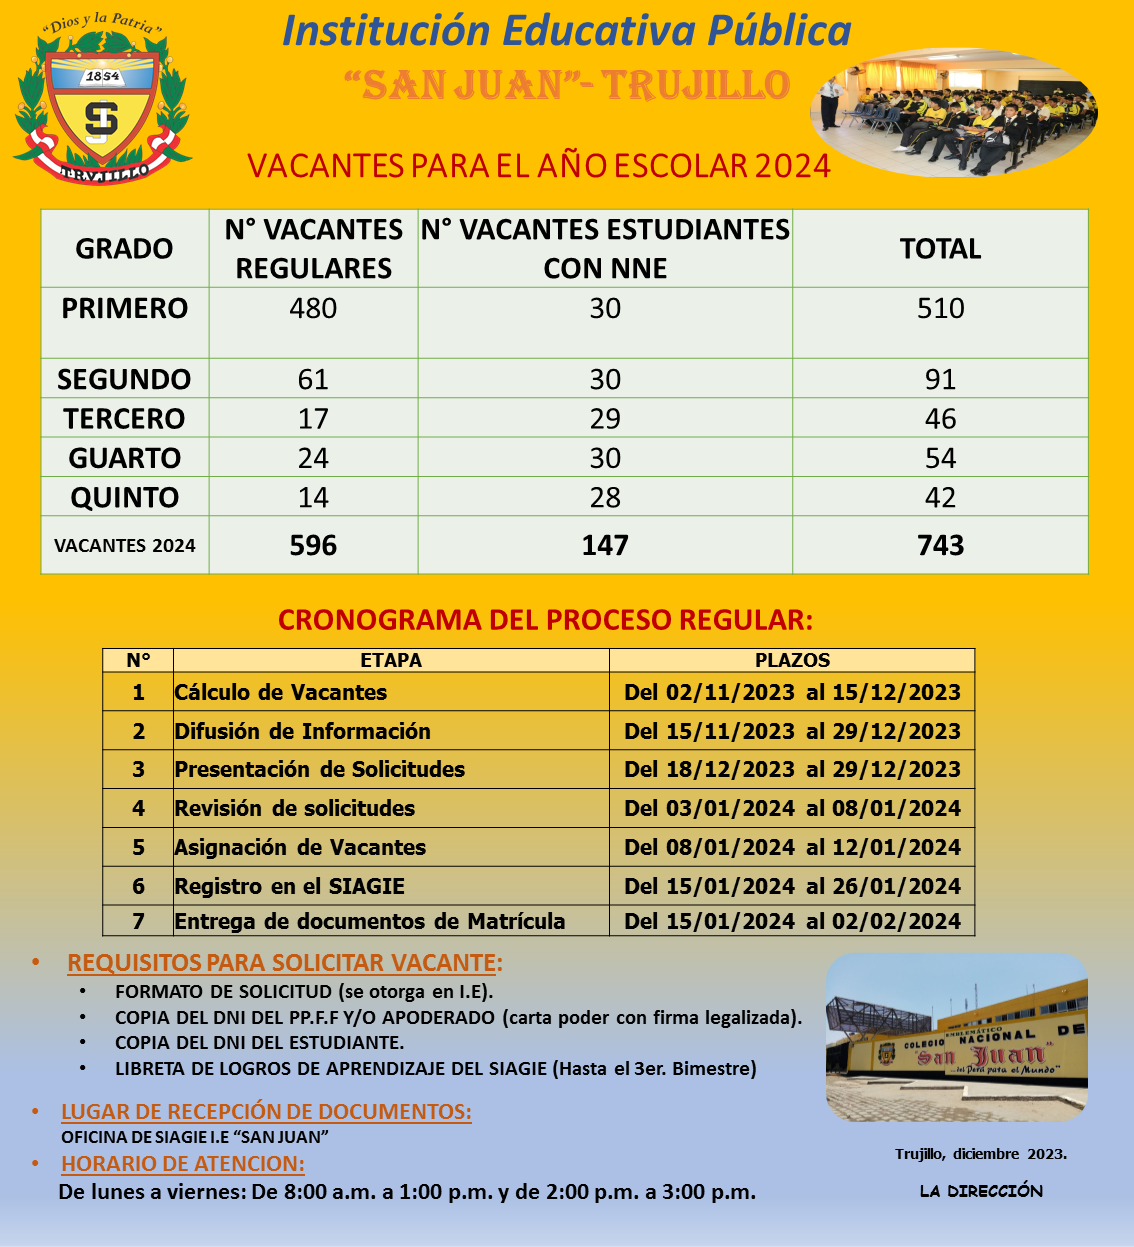 La emblemática institución educativa "San Juan" de la ciudad de Trujillo hace de conocimiento público las vacantes para este año 2024.